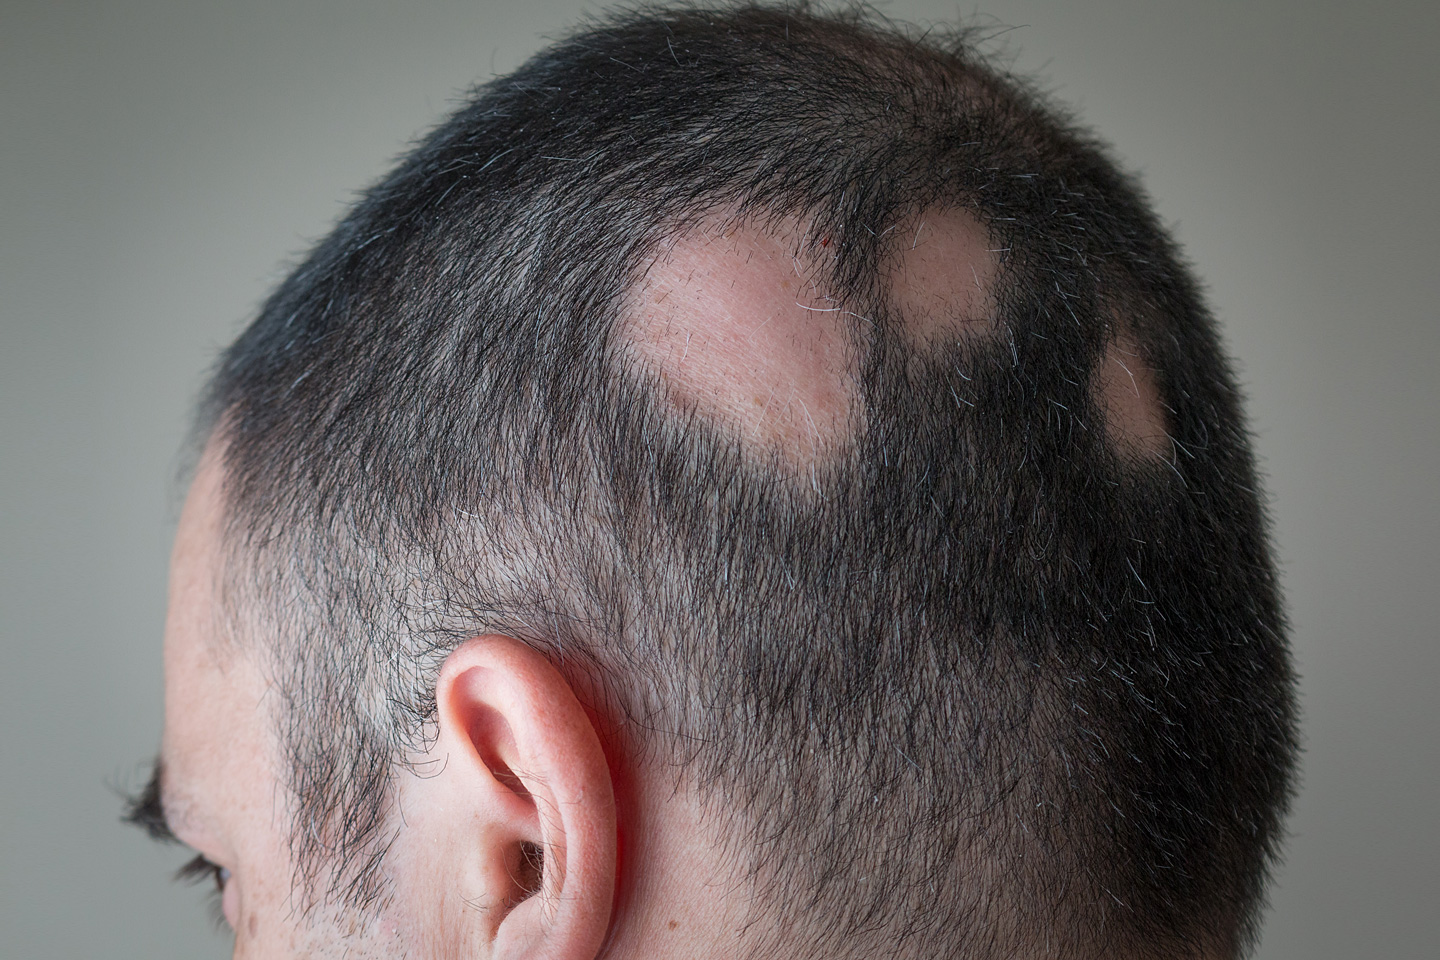 Ansicht des Hinterkopfs eines Mannes mit kahlen Stellen. Der Mann leidet unter kreisrundem Haarausfall.